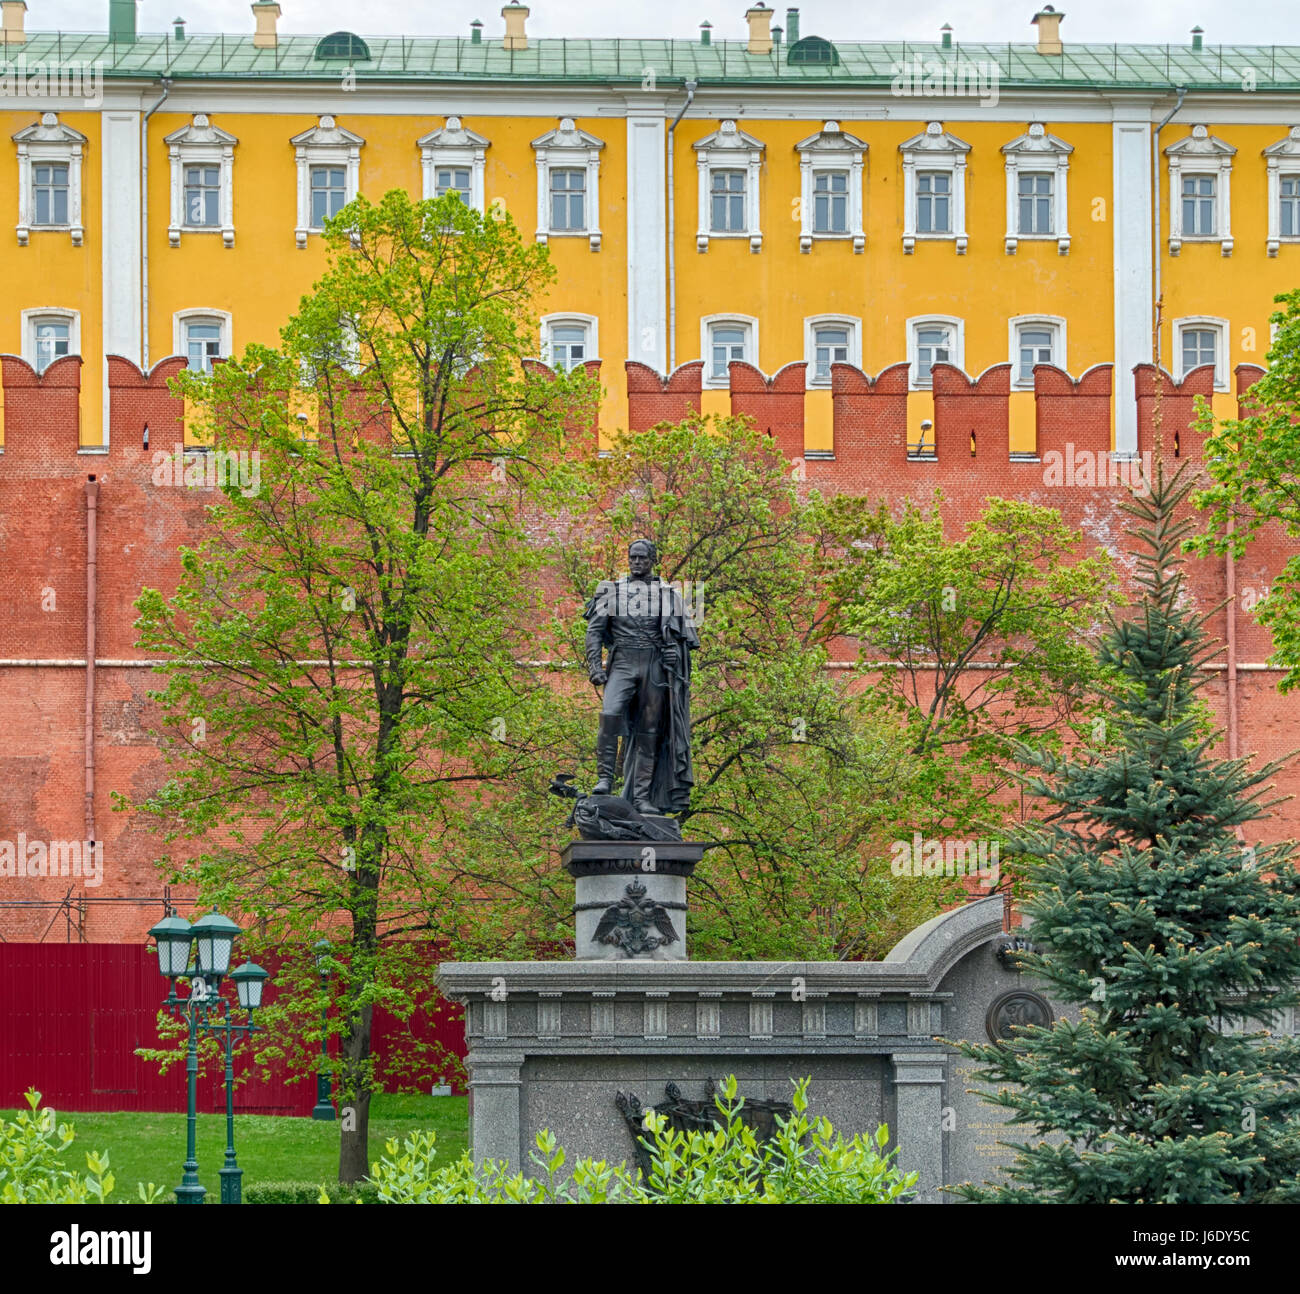 Alexandrovsky Garden - Moscow, Russia Stock Photo